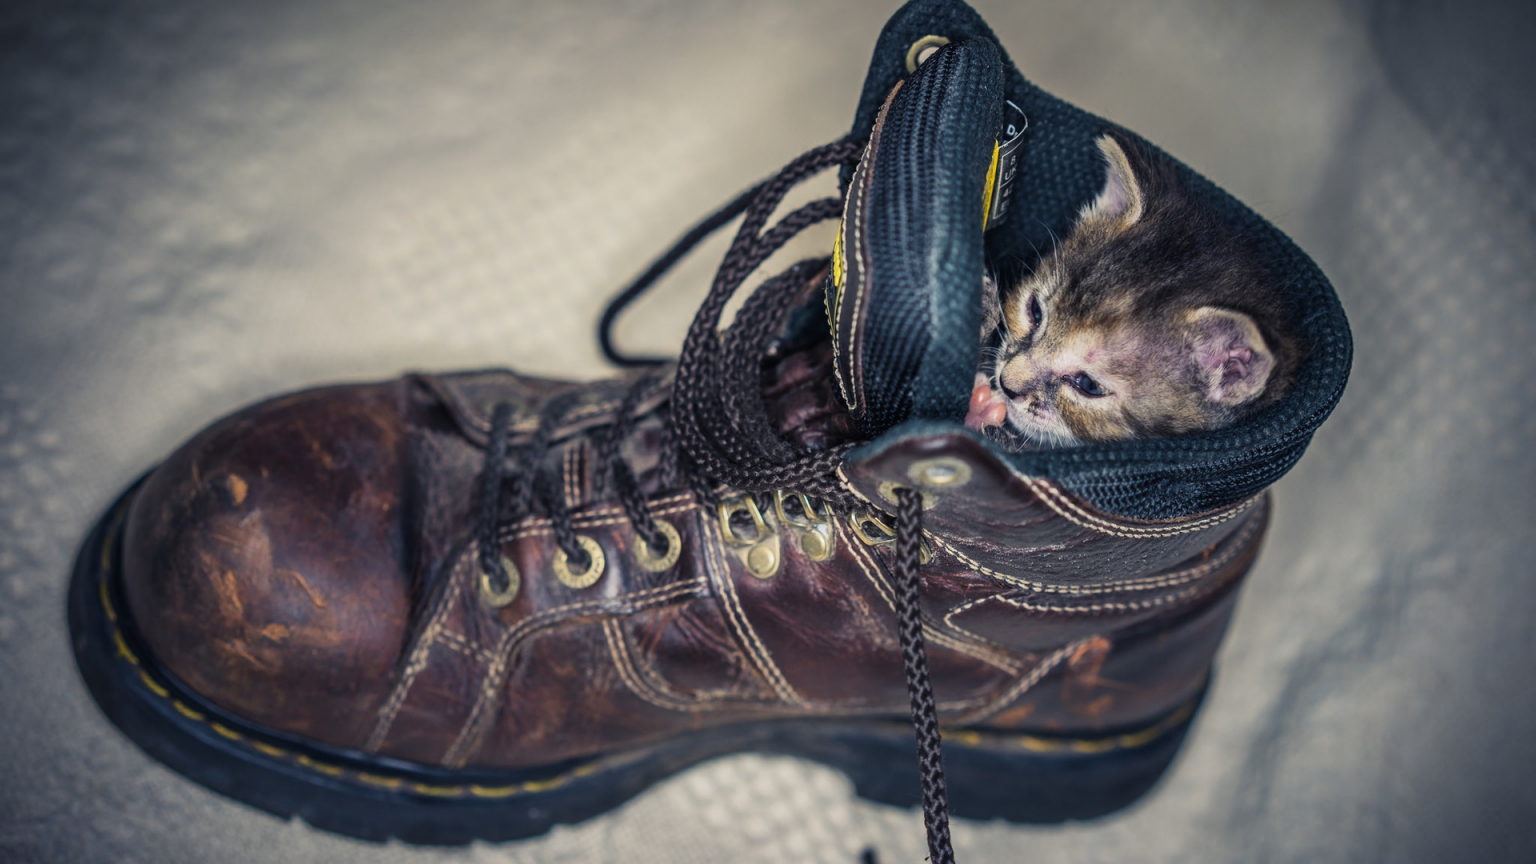 Kitten in Shoe for 1536 x 864 HDTV resolution